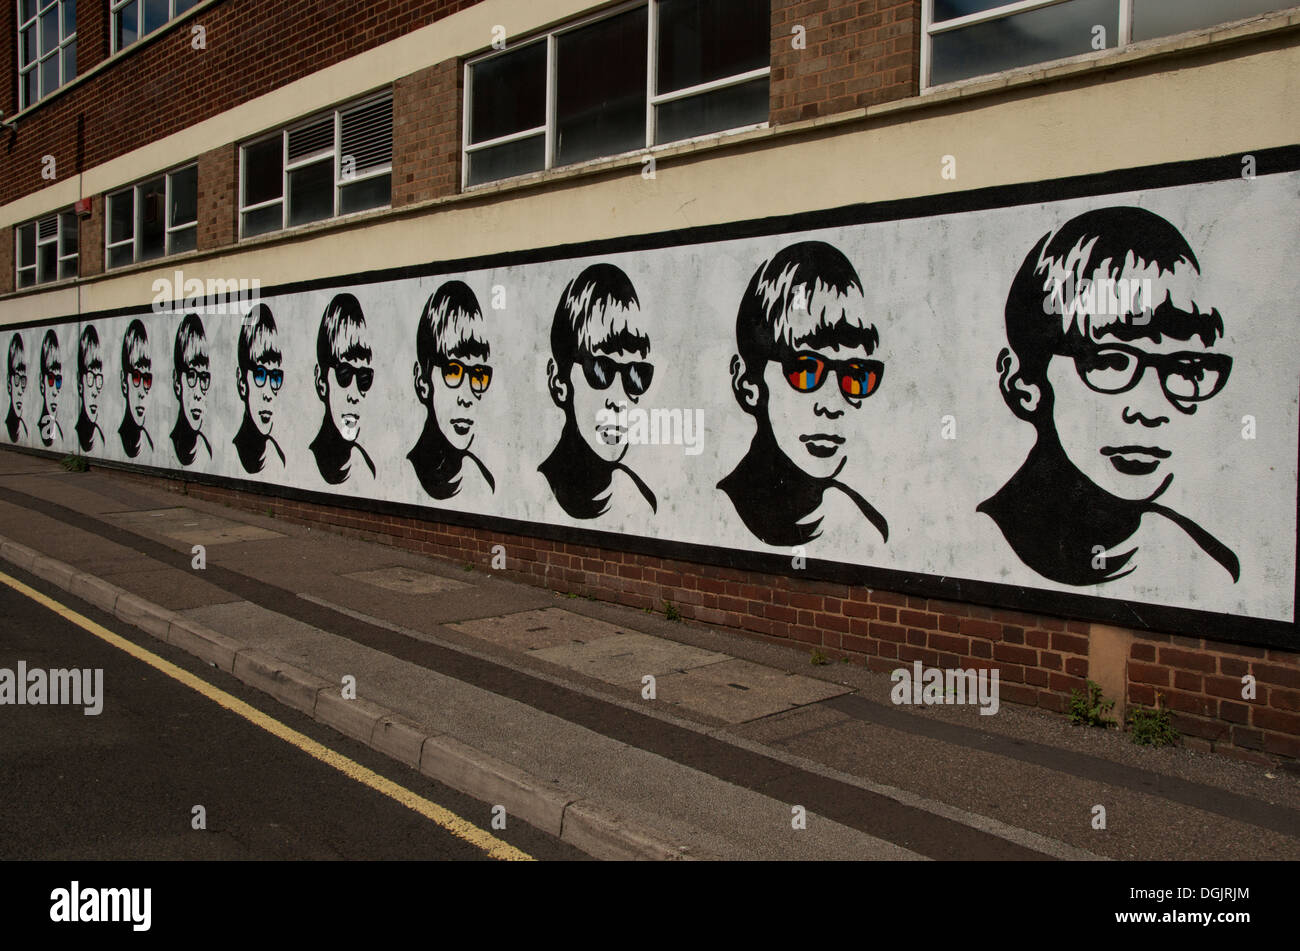 Street Art by Golden Boy in Lower Essex Street in the Digbeth area of Birmingham UK Stock Photo